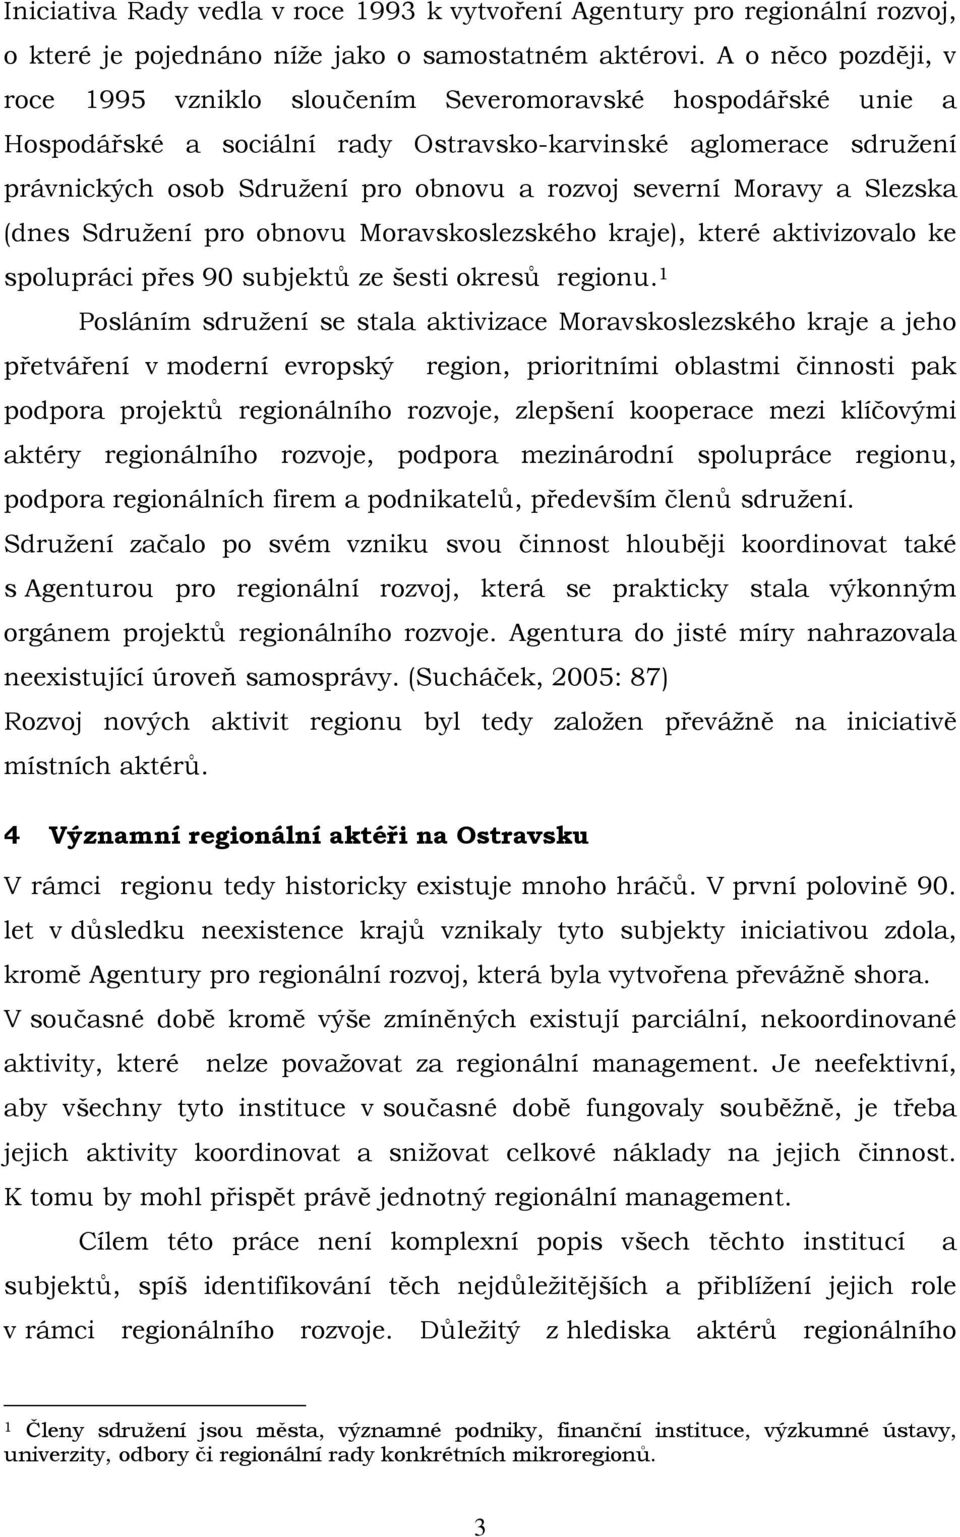 severní Moravy a Slezska (dnes Sdružení pro obnovu Moravskoslezského kraje), které aktivizovalo ke spolupráci přes 90 subjektů ze šesti okresů regionu.